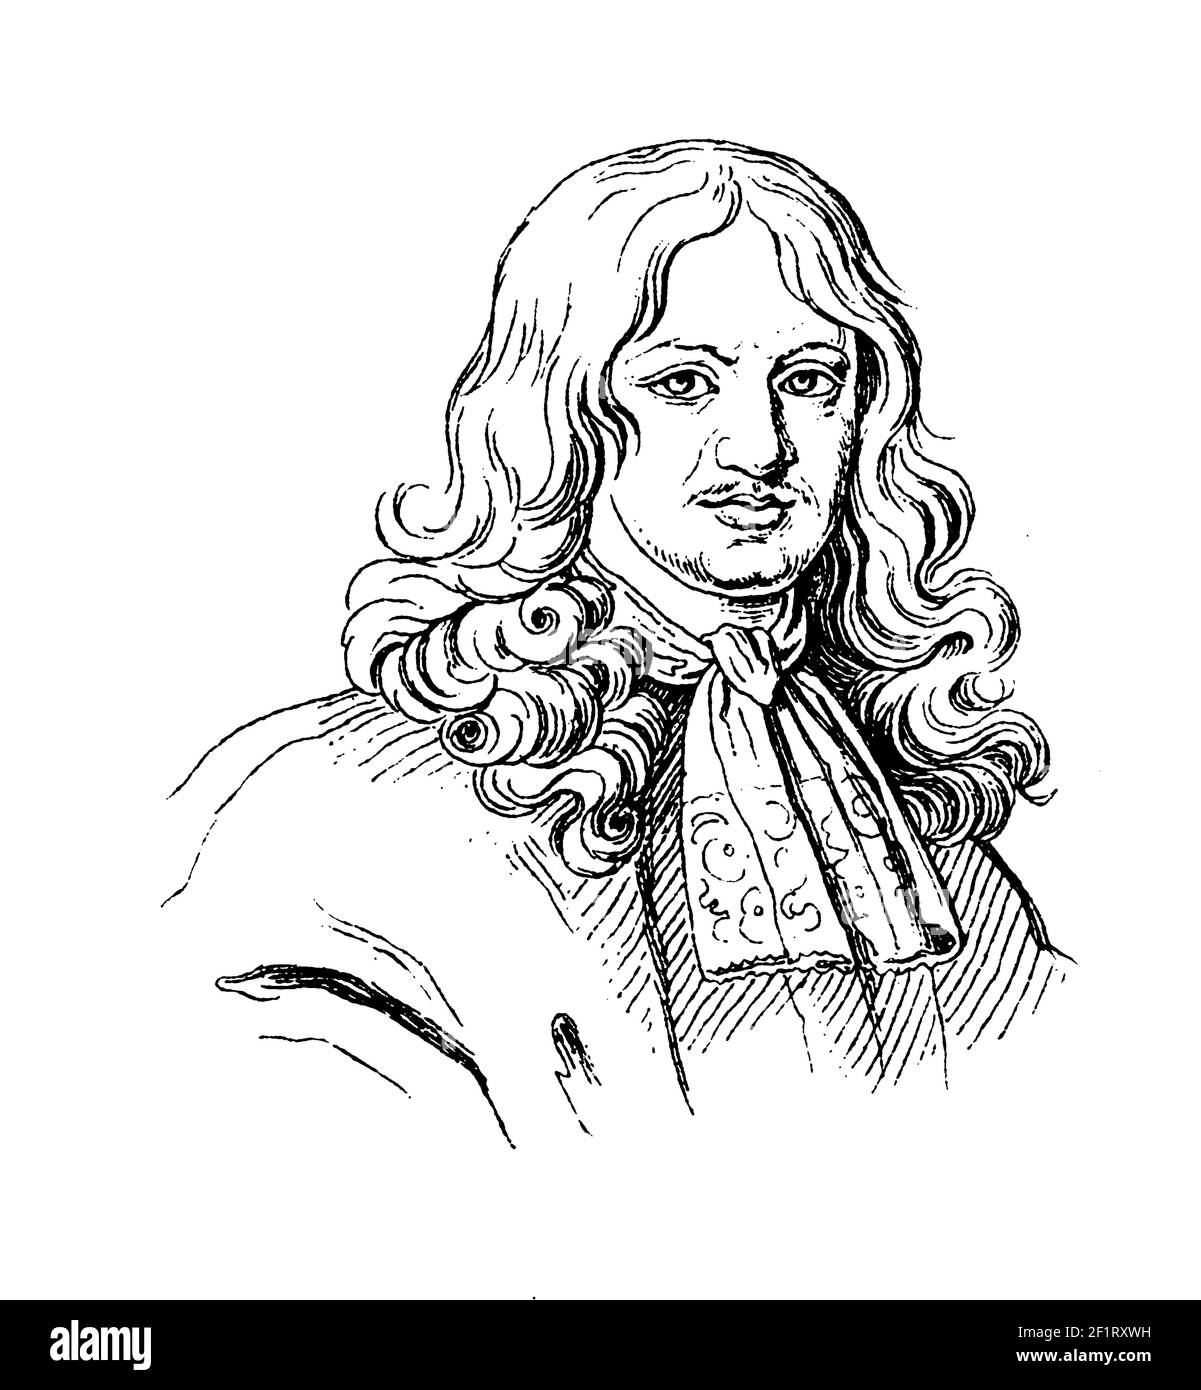 Antike Gravur eines Porträts von Daniel Casper von Lohenstein, barocker schlesischer Dramatiker, Rechtsanwalt, Diplomat und Dichter. Er wurde am 25. Januar 16 geboren Stockfoto